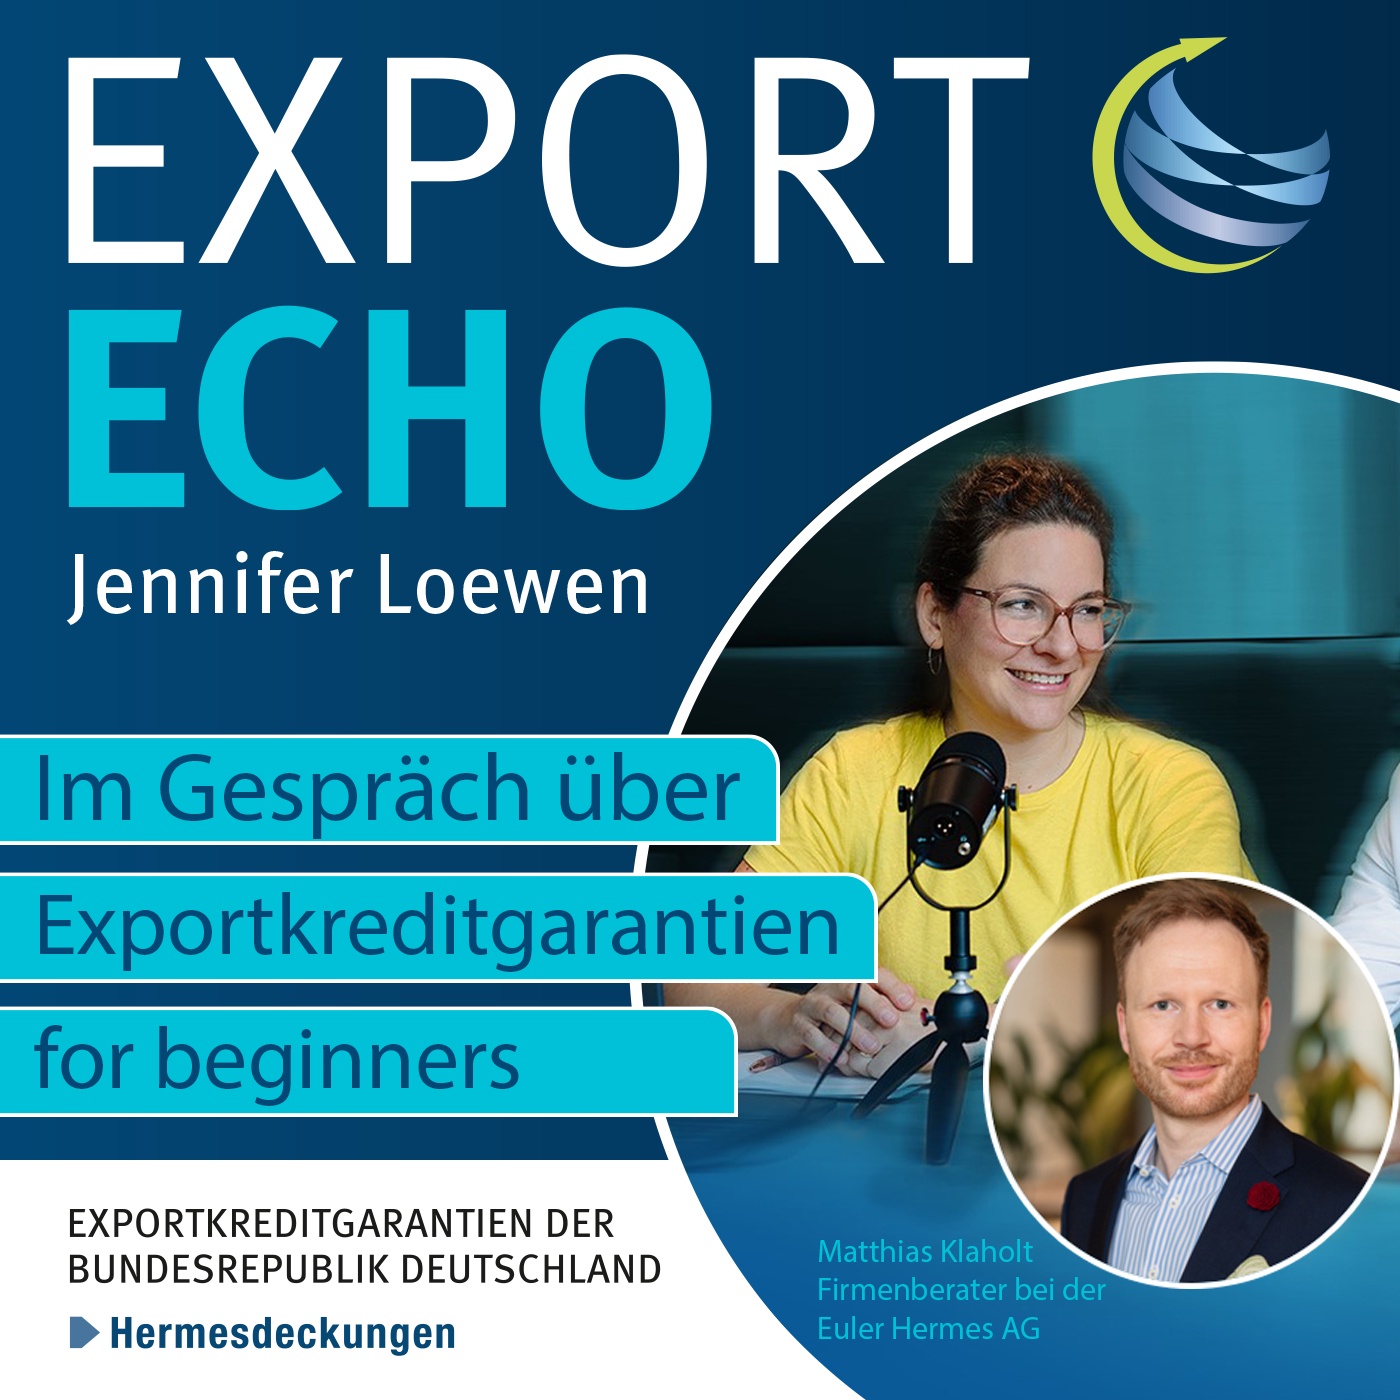 #4: Exportkreditgarantien for beginners